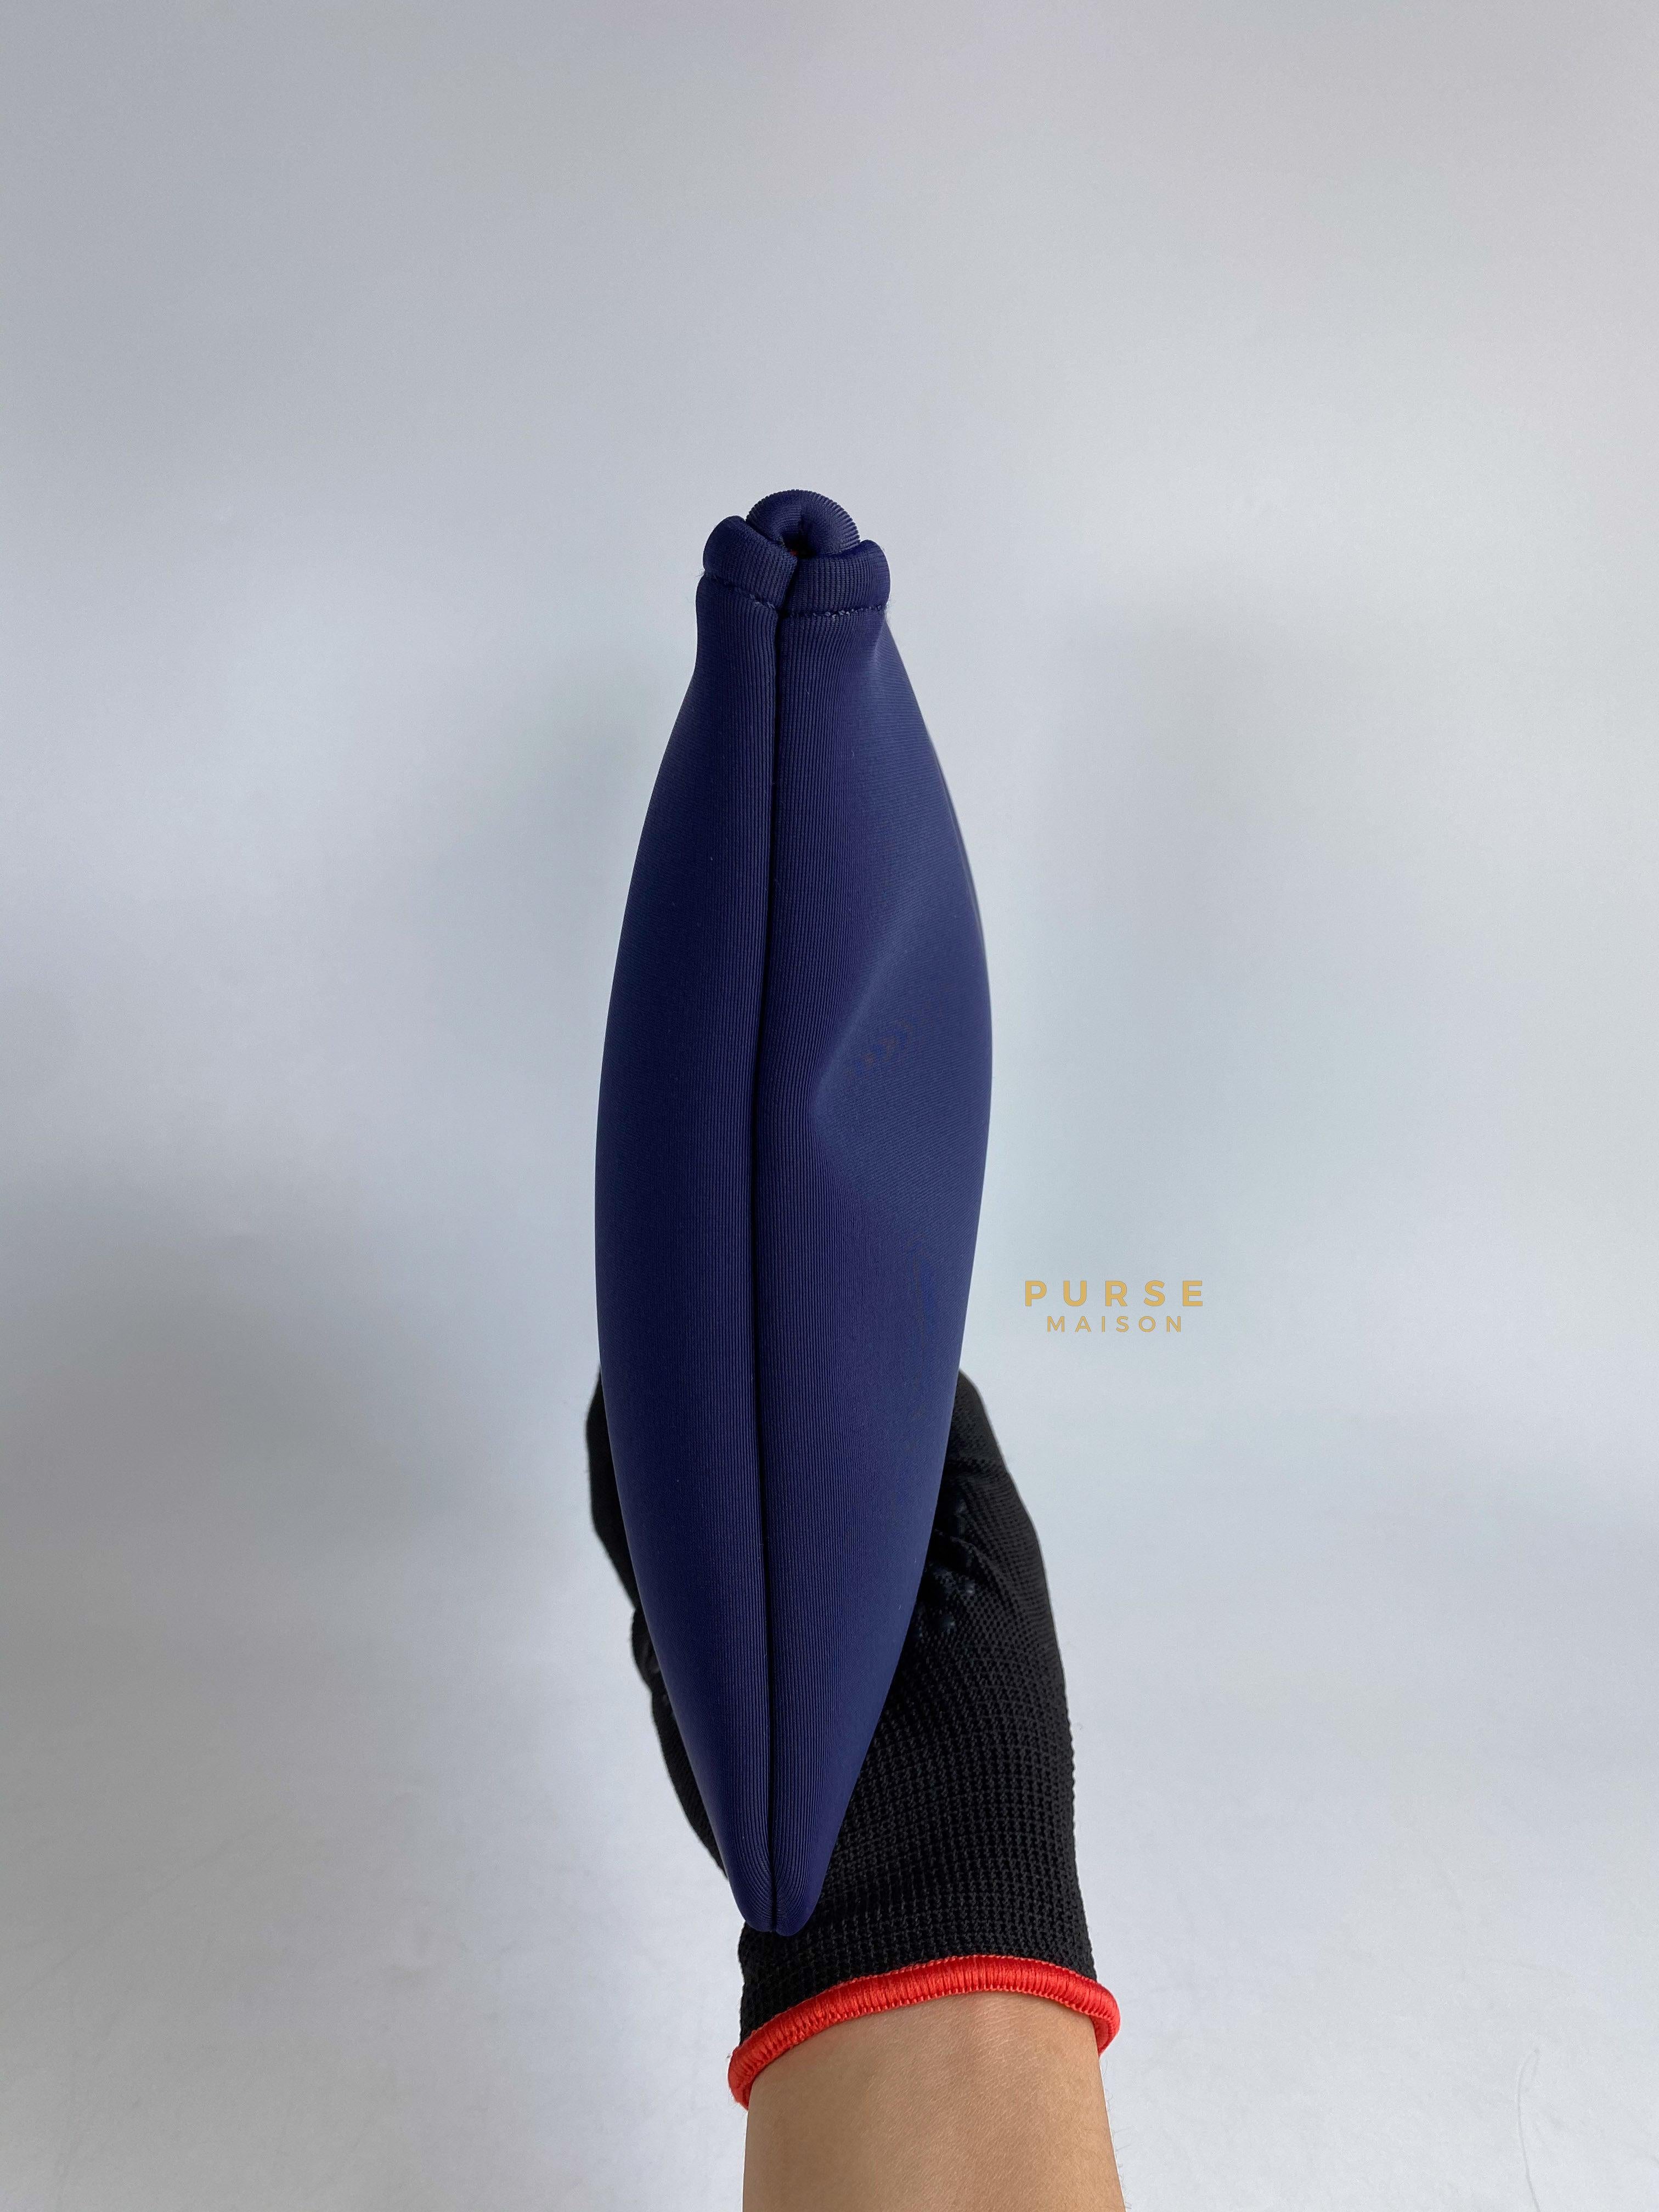 Hermes Neobaine MM Case Bleu Marine | Purse Maison Luxury Bags Shop